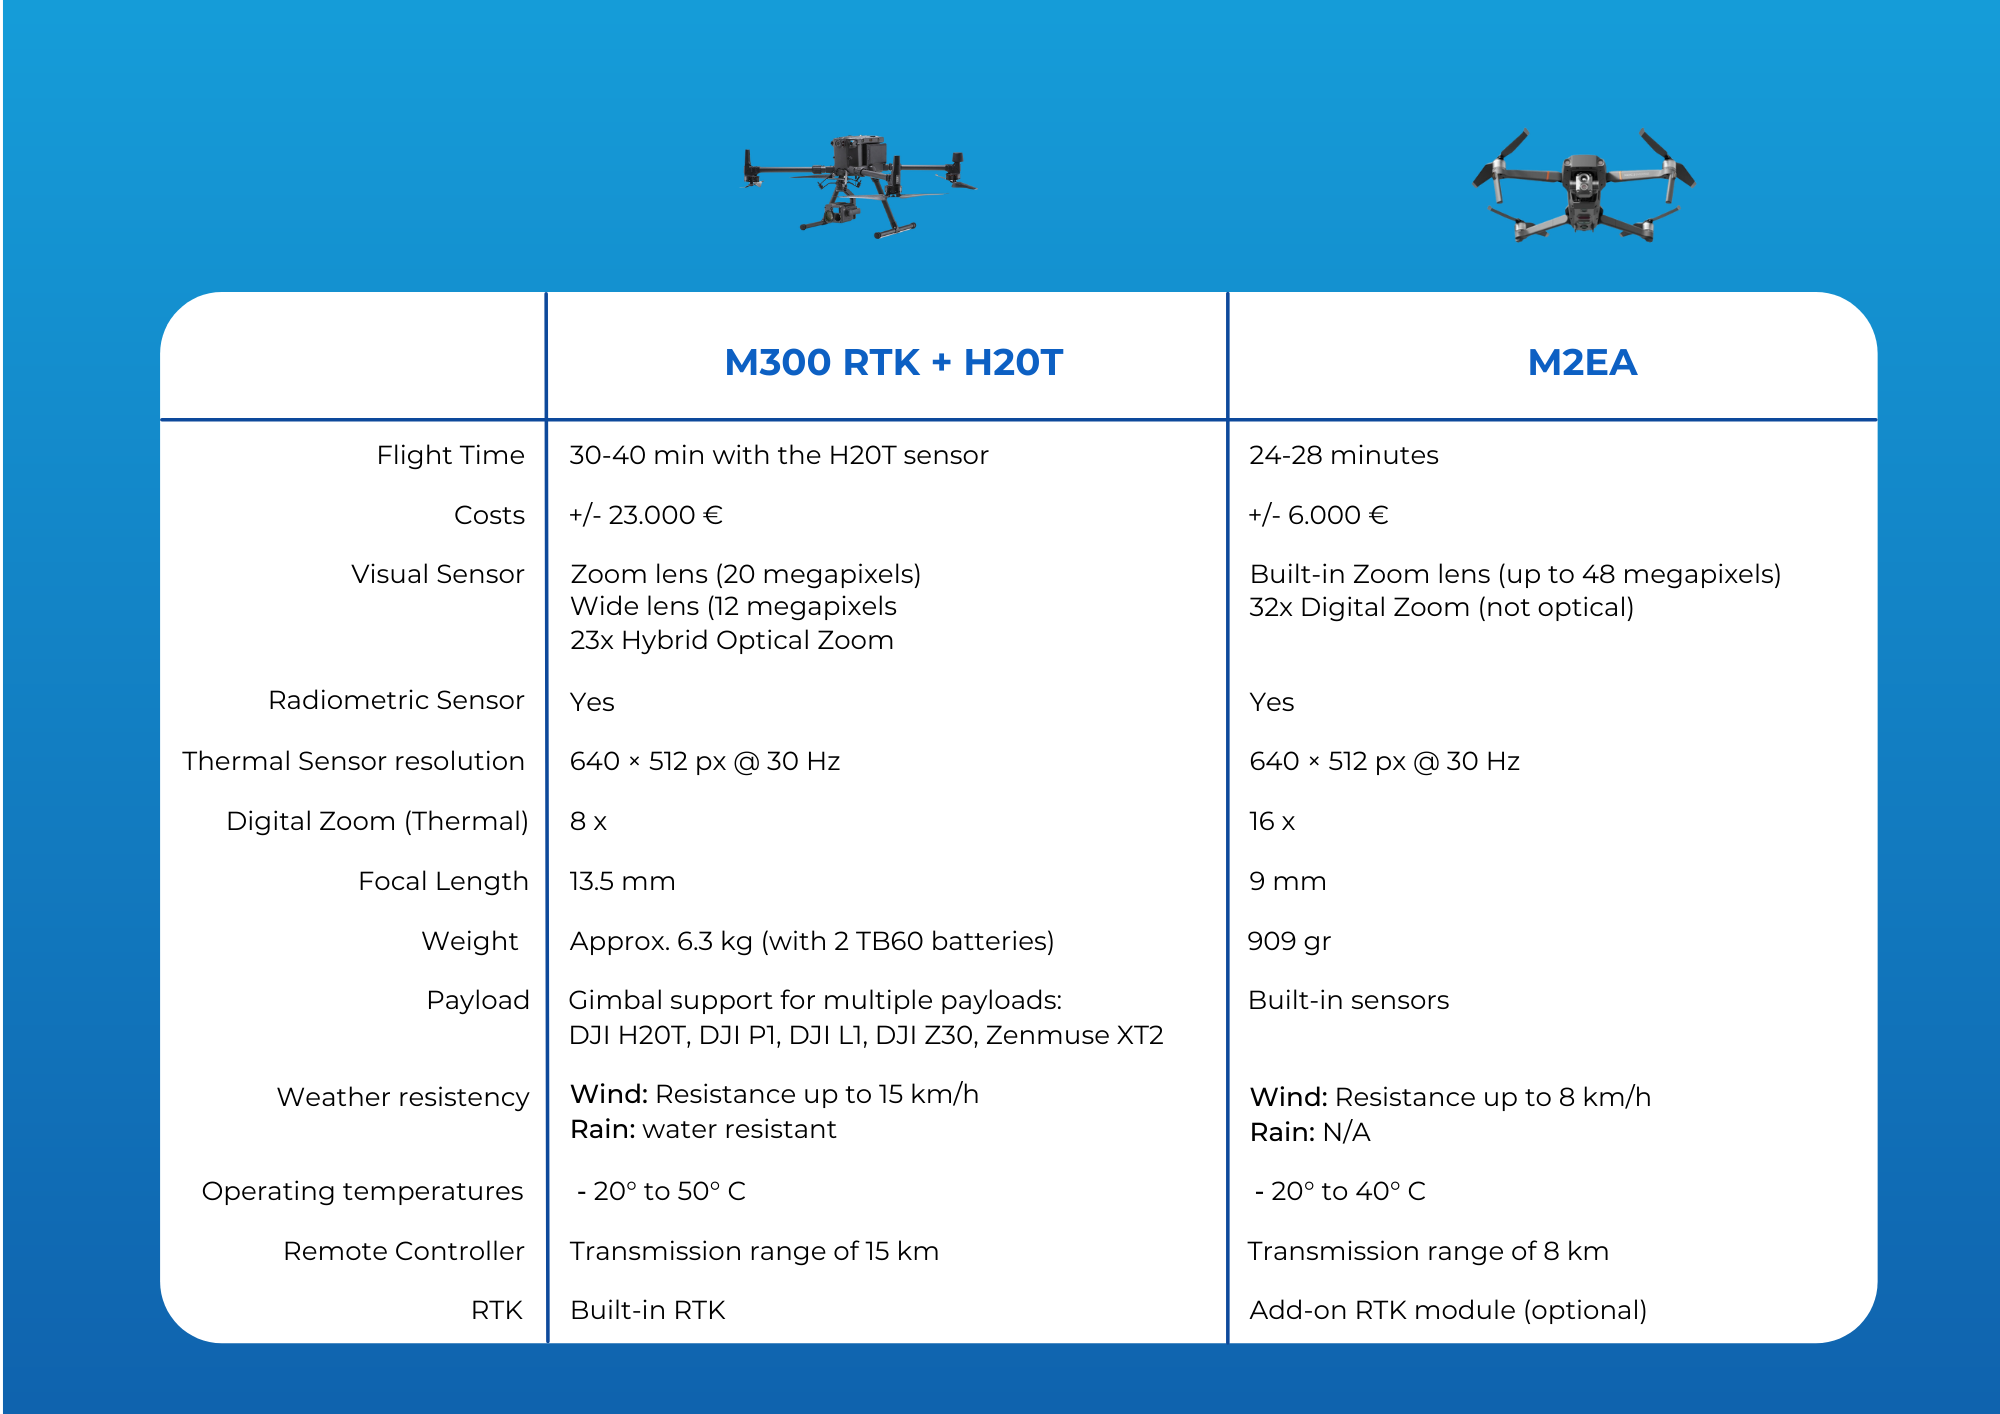 M300RTK vs M2EA: comparison of the features